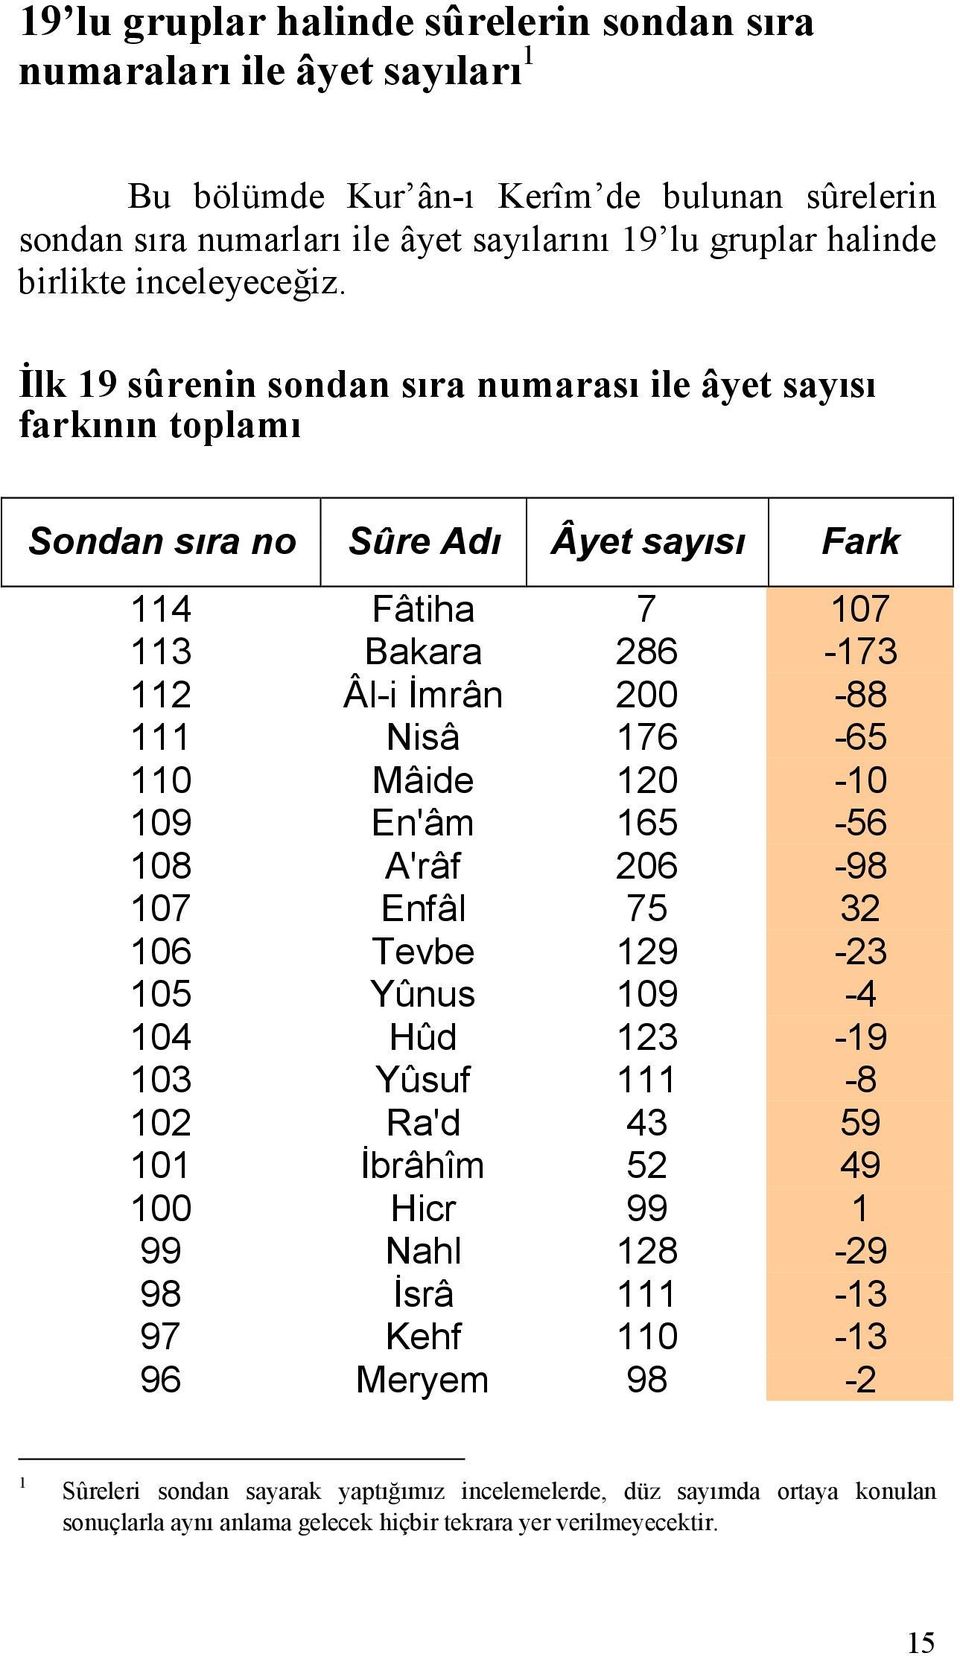 İlk sûrenin sondan sıra numarası ile âyet sayısı farkının toplamı Sûre Adı Âyet sayısı Fark Fâtiha 7 7 3 Bakara -73 Âl-i İmrân - Nisâ 7 - Mâide - En'âm